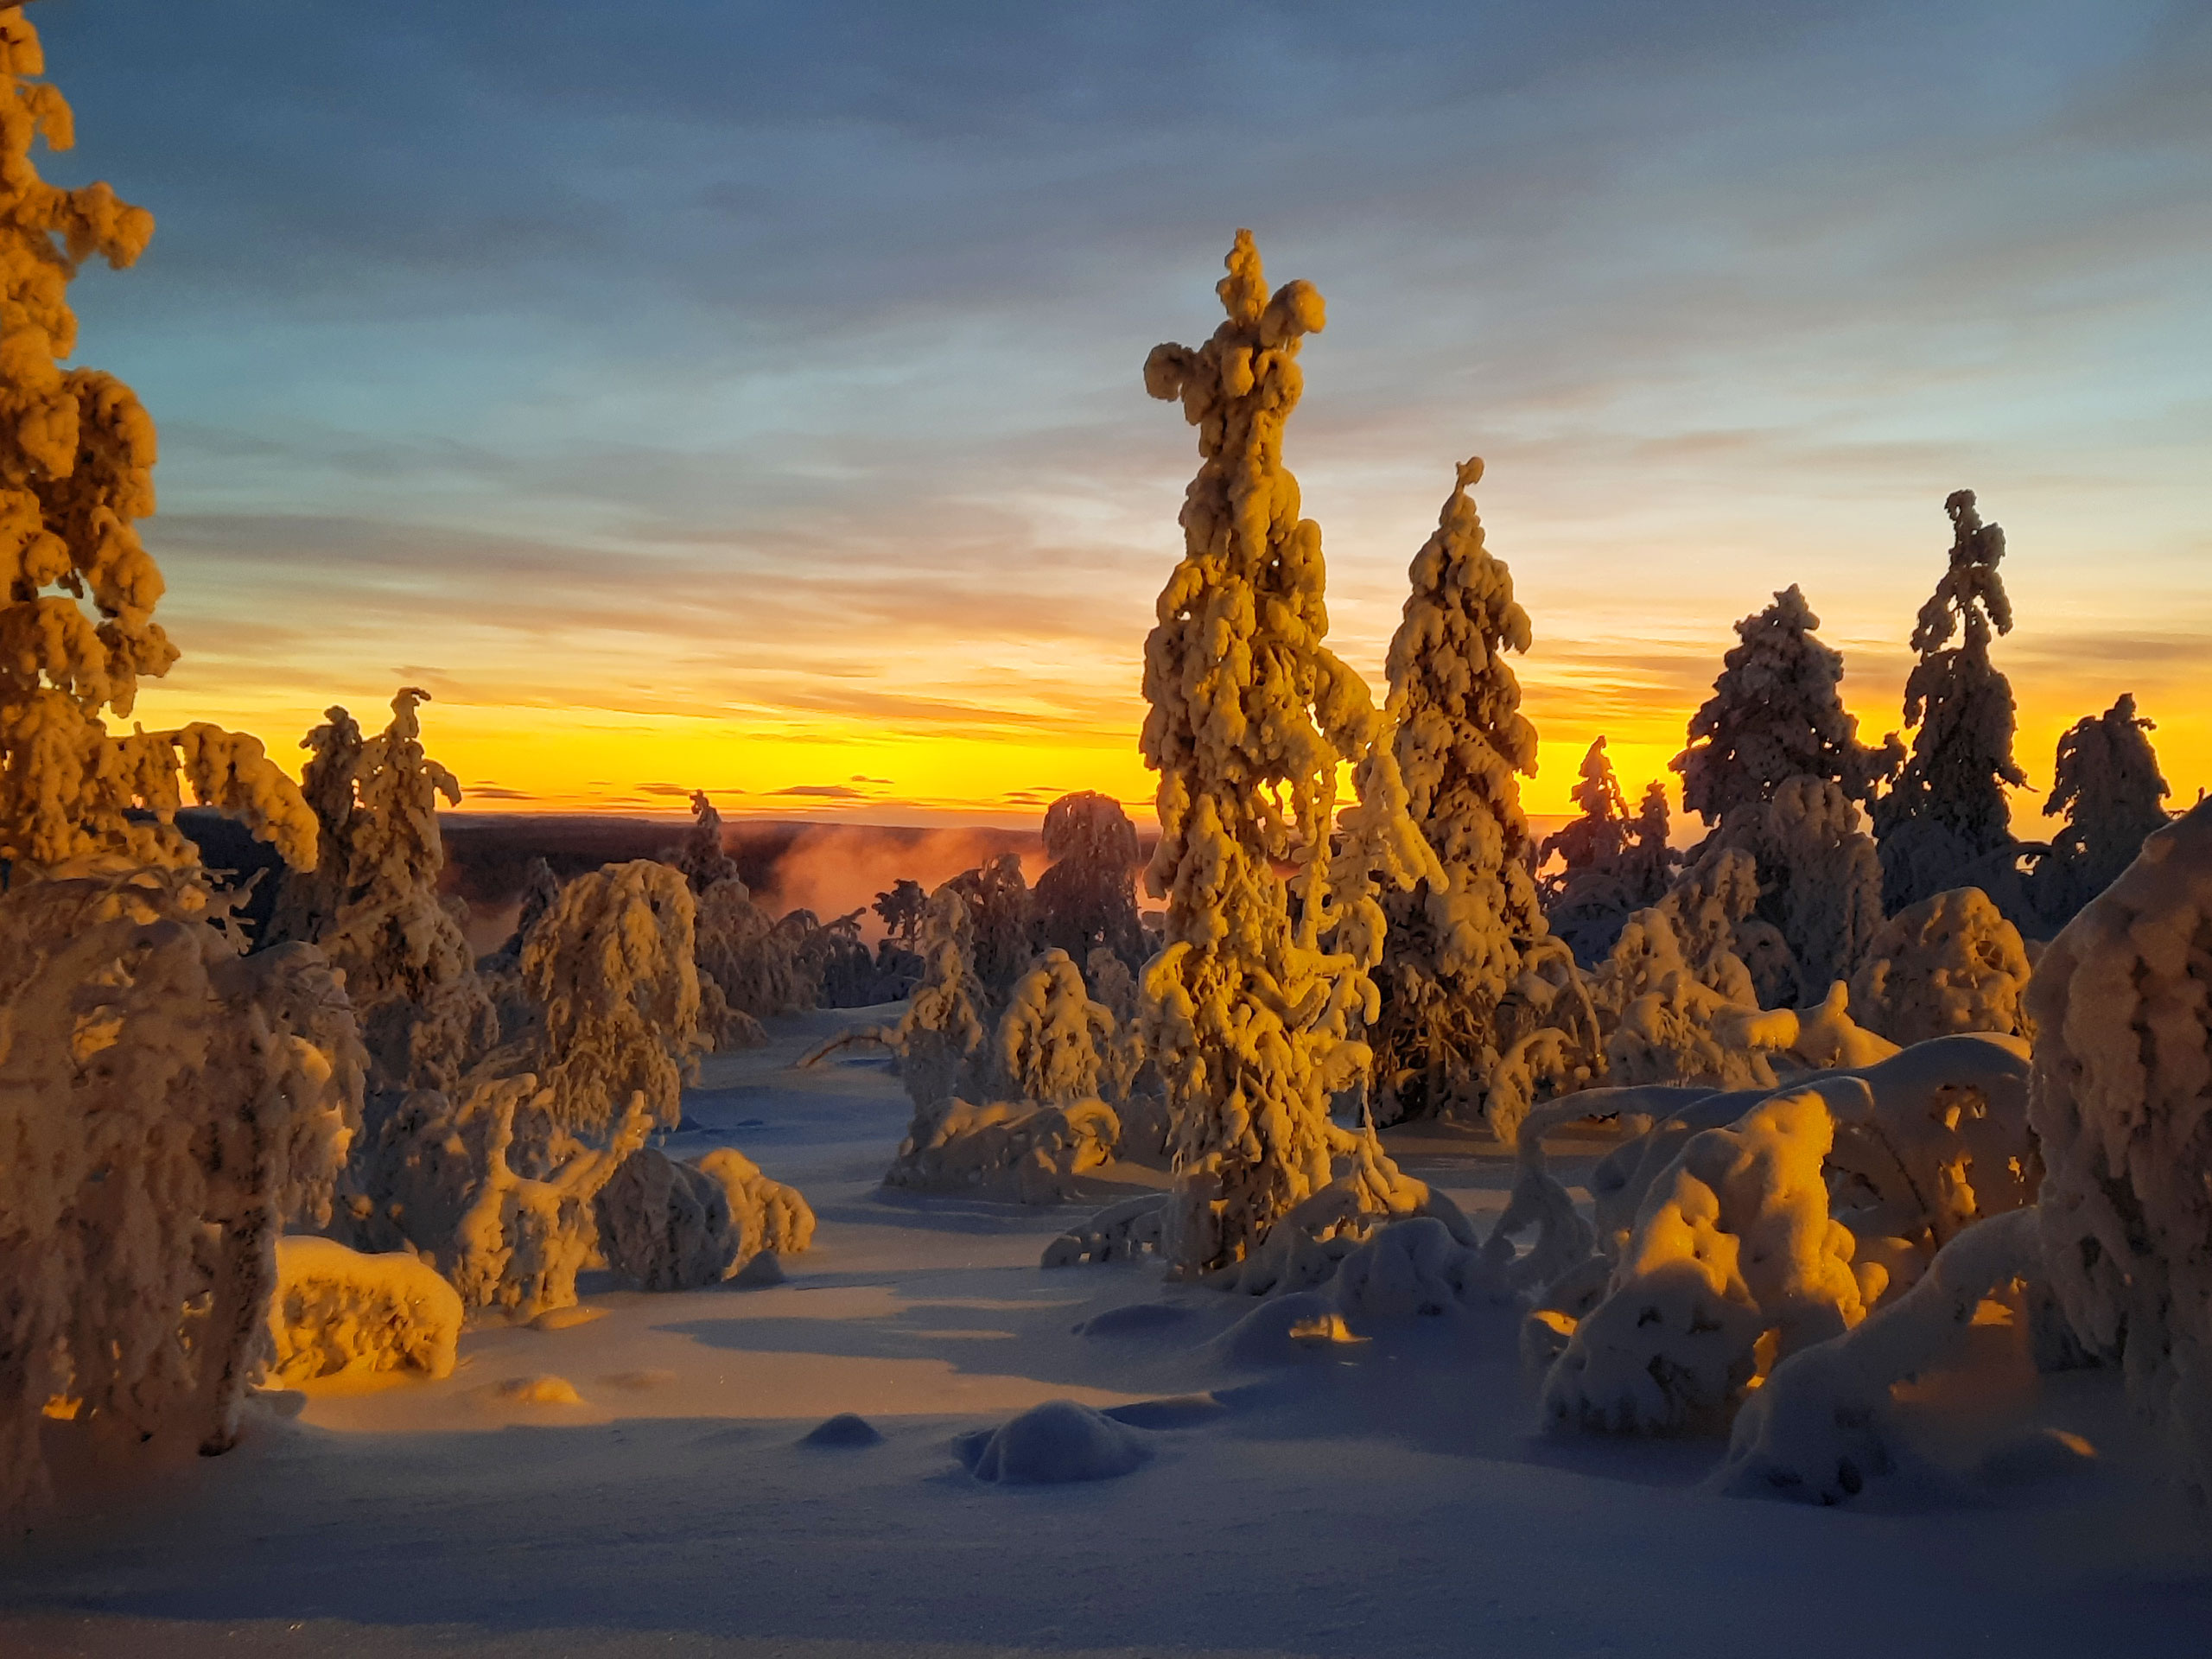 Komatsu Forestin valokuvauskilpailu joulukuu 2020, 2. palkinto: Heikki Viitanen